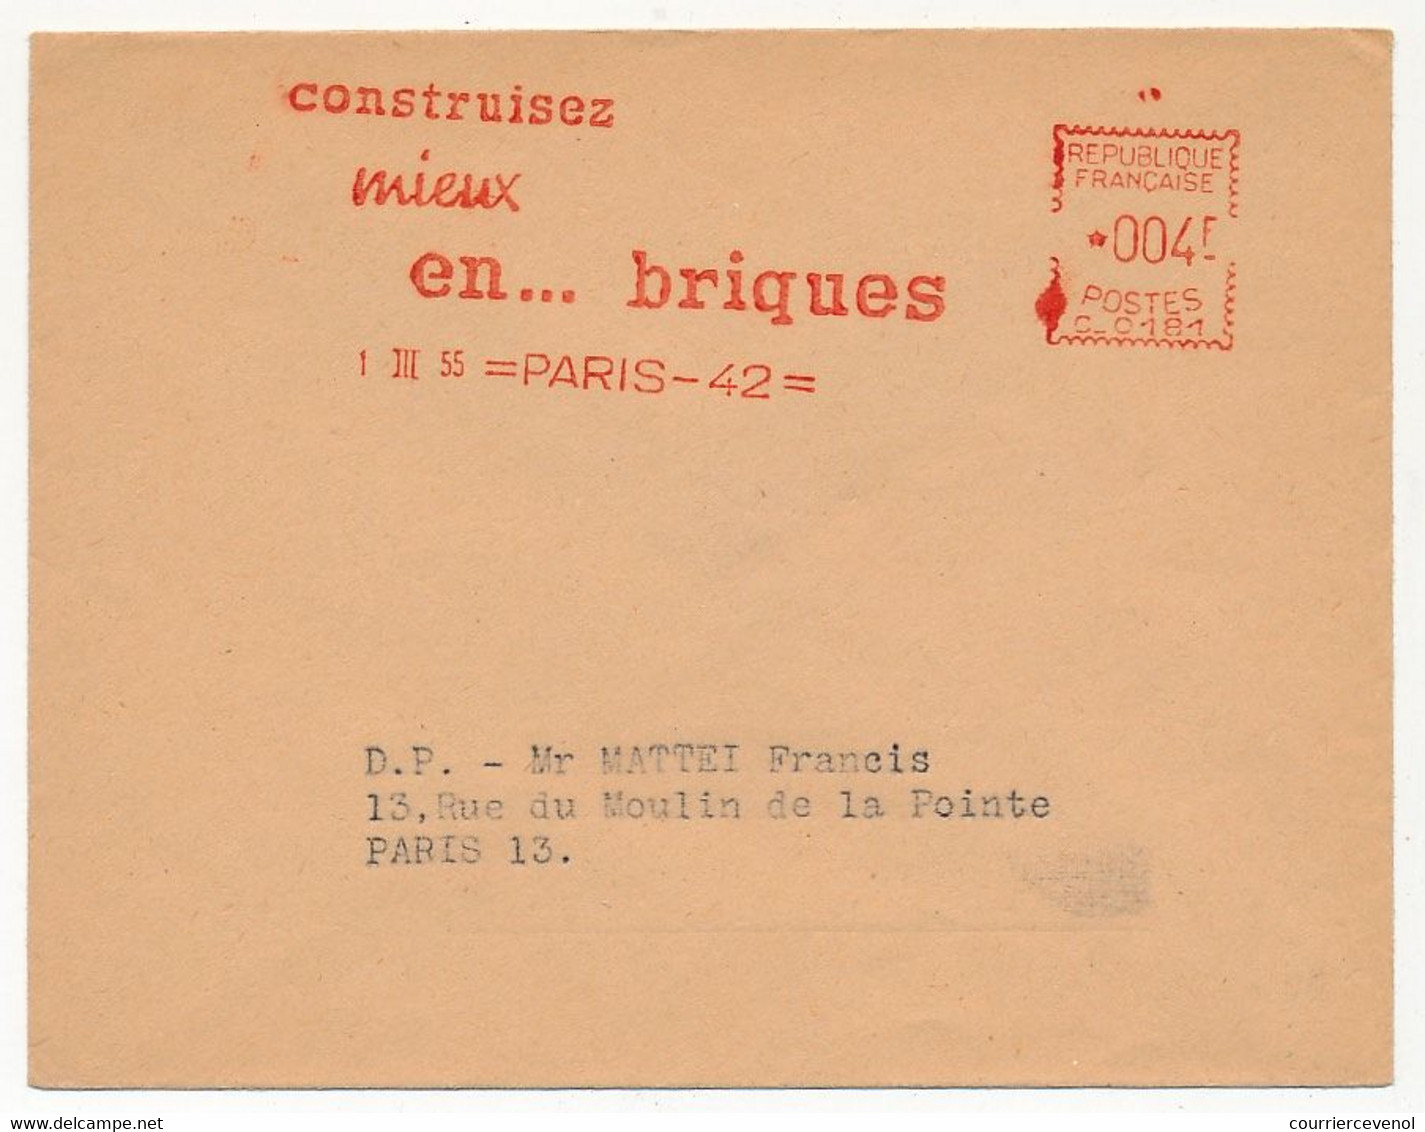 FRANCE - Enveloppe EMA - Construisez Mieux En Briques - 1/3/1955 - Paris 42 - EMA (Printer Machine)